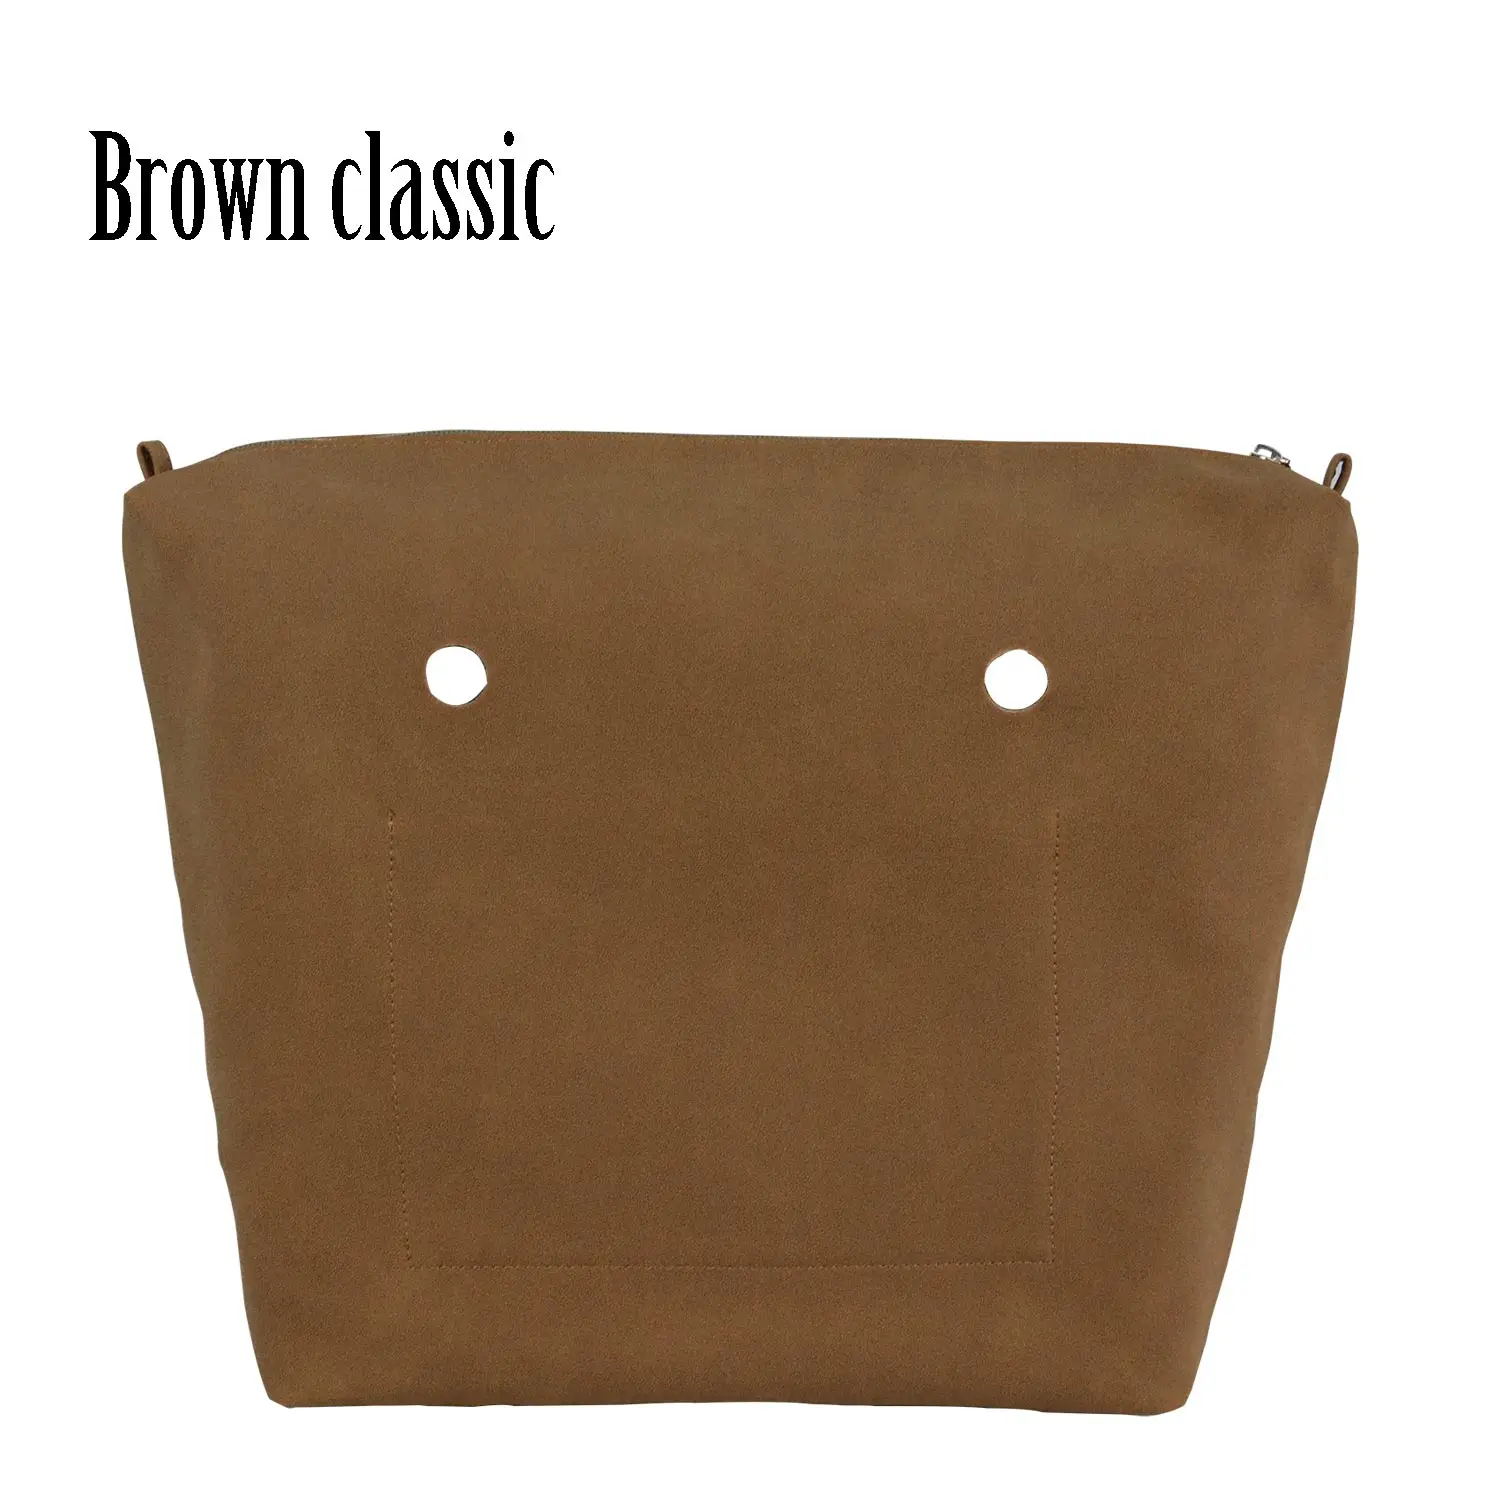 Huntfun Пу нубук матовая кожа водонепроницаемая внутренняя подкладка карман на молнии для Obag Классическая Мини Подкладка Вставка для O сумка - Цвет: brown classic